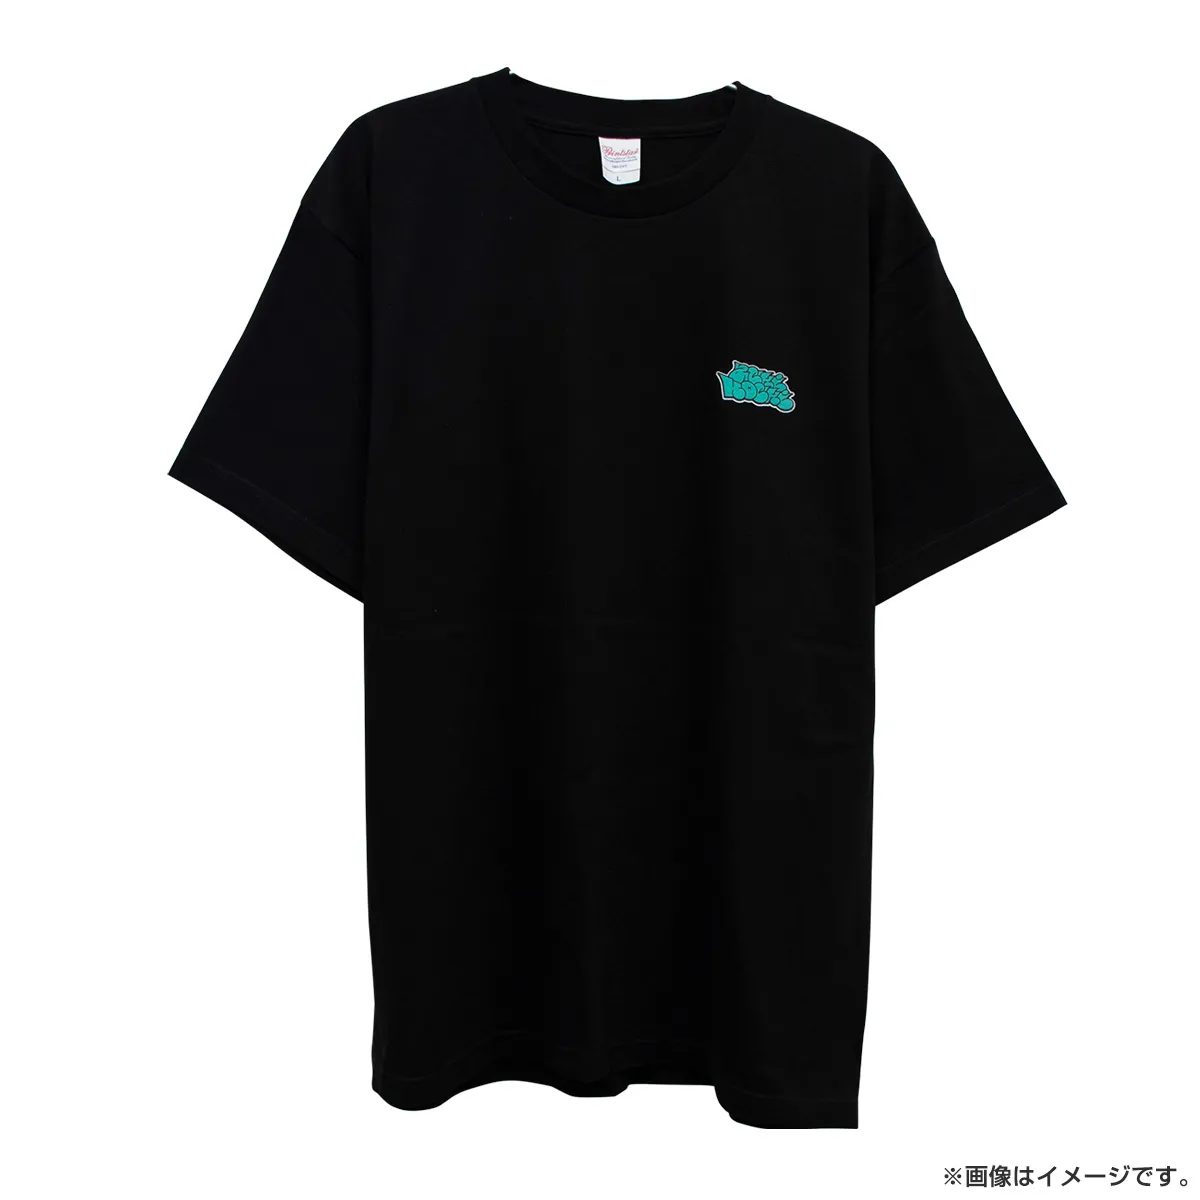 オードリー オールナイトニッポン 東京ドーム 宣伝Tシャツ 黒Lサイズ 